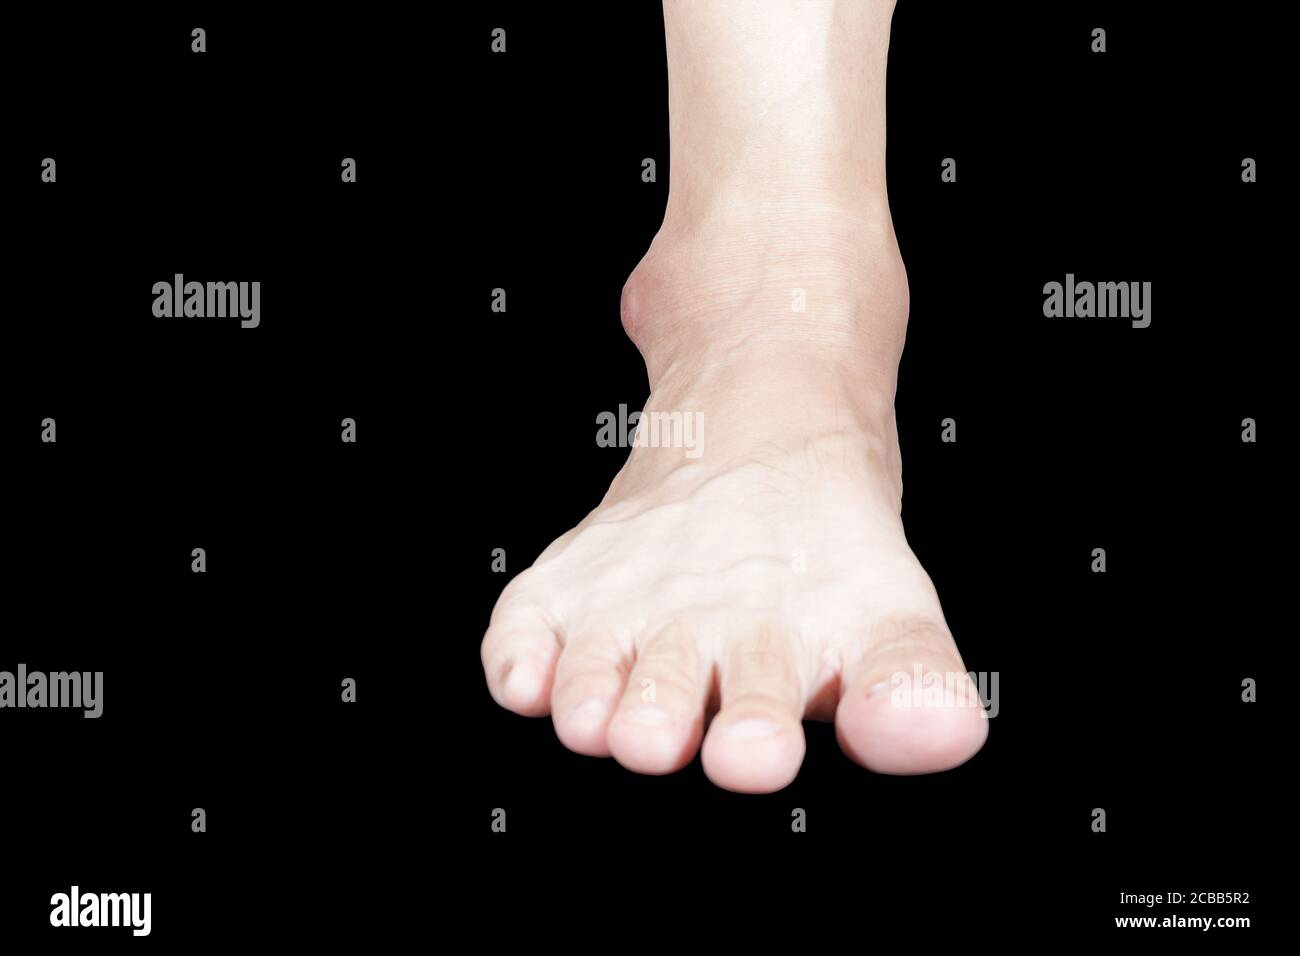 L'immagine del piede destro davanti all'astragalo è gonfia, opaca e nera a  causa di infiammazione Foto stock - Alamy